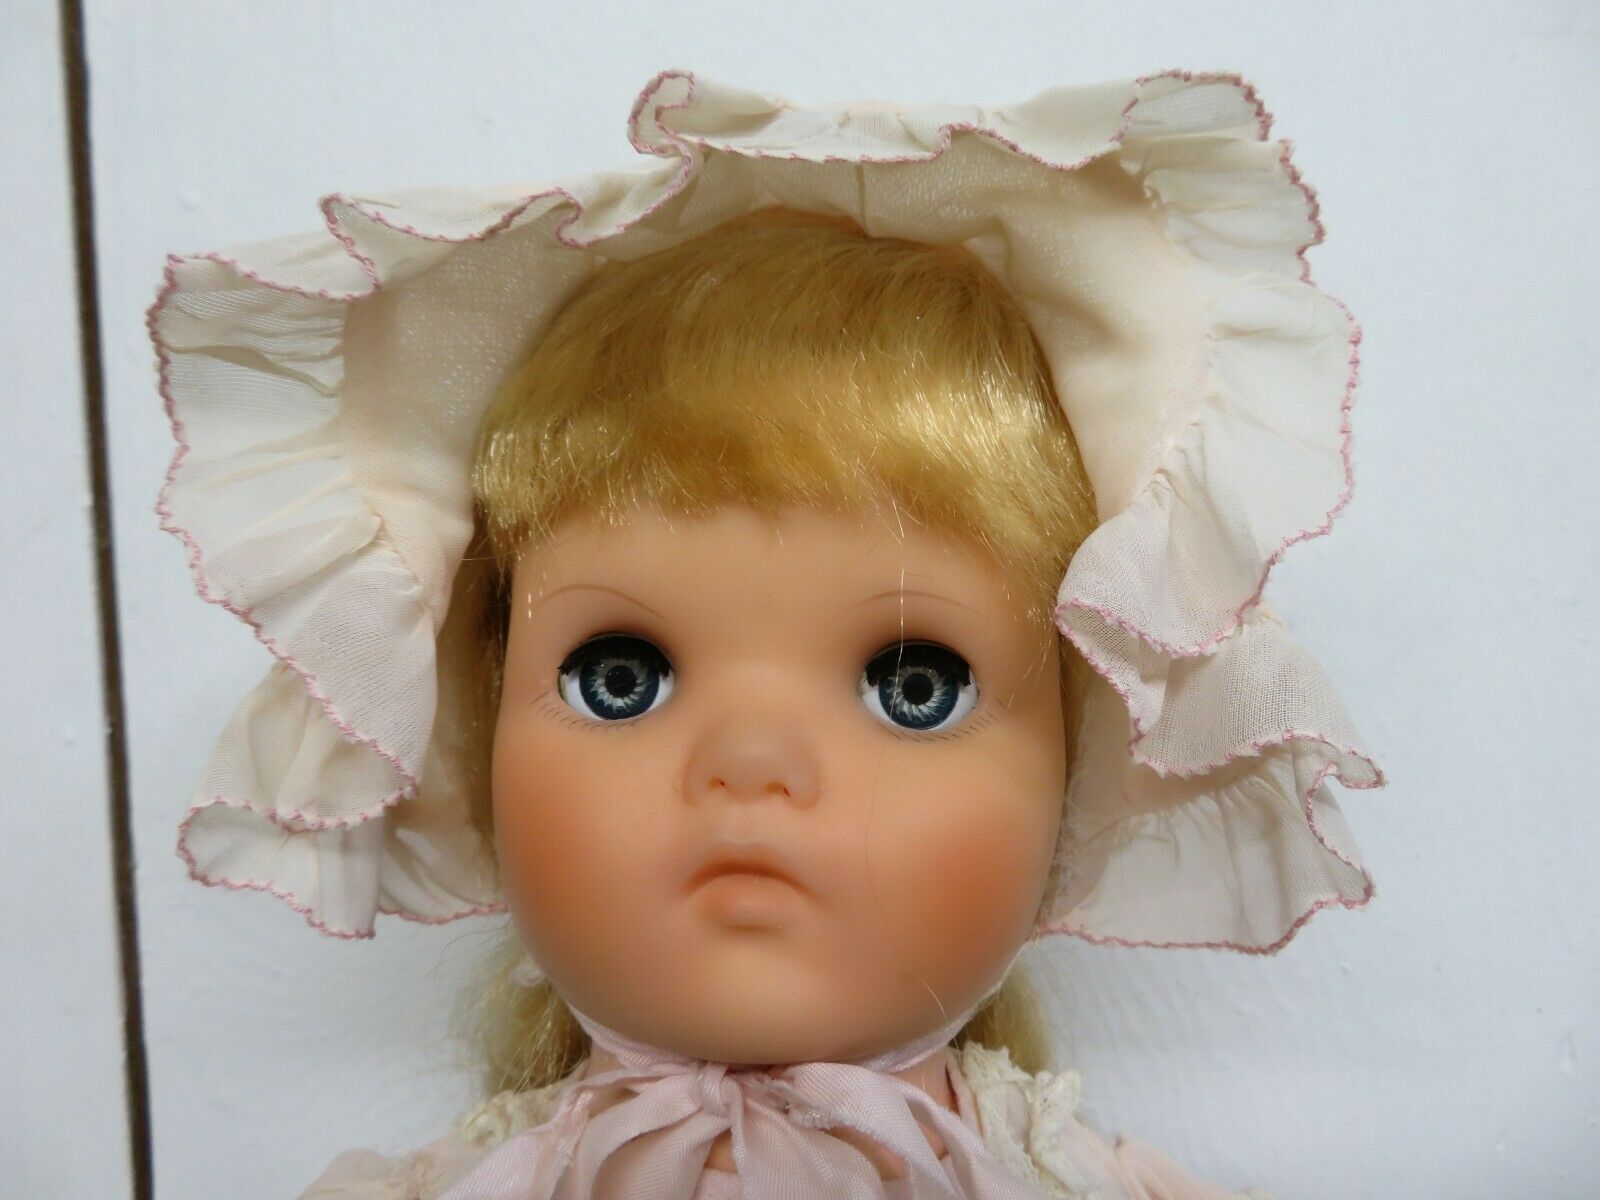 Vintage 1954 Beautiful Vinyl Doll With Long Blonde Hair & Sleep Eyes